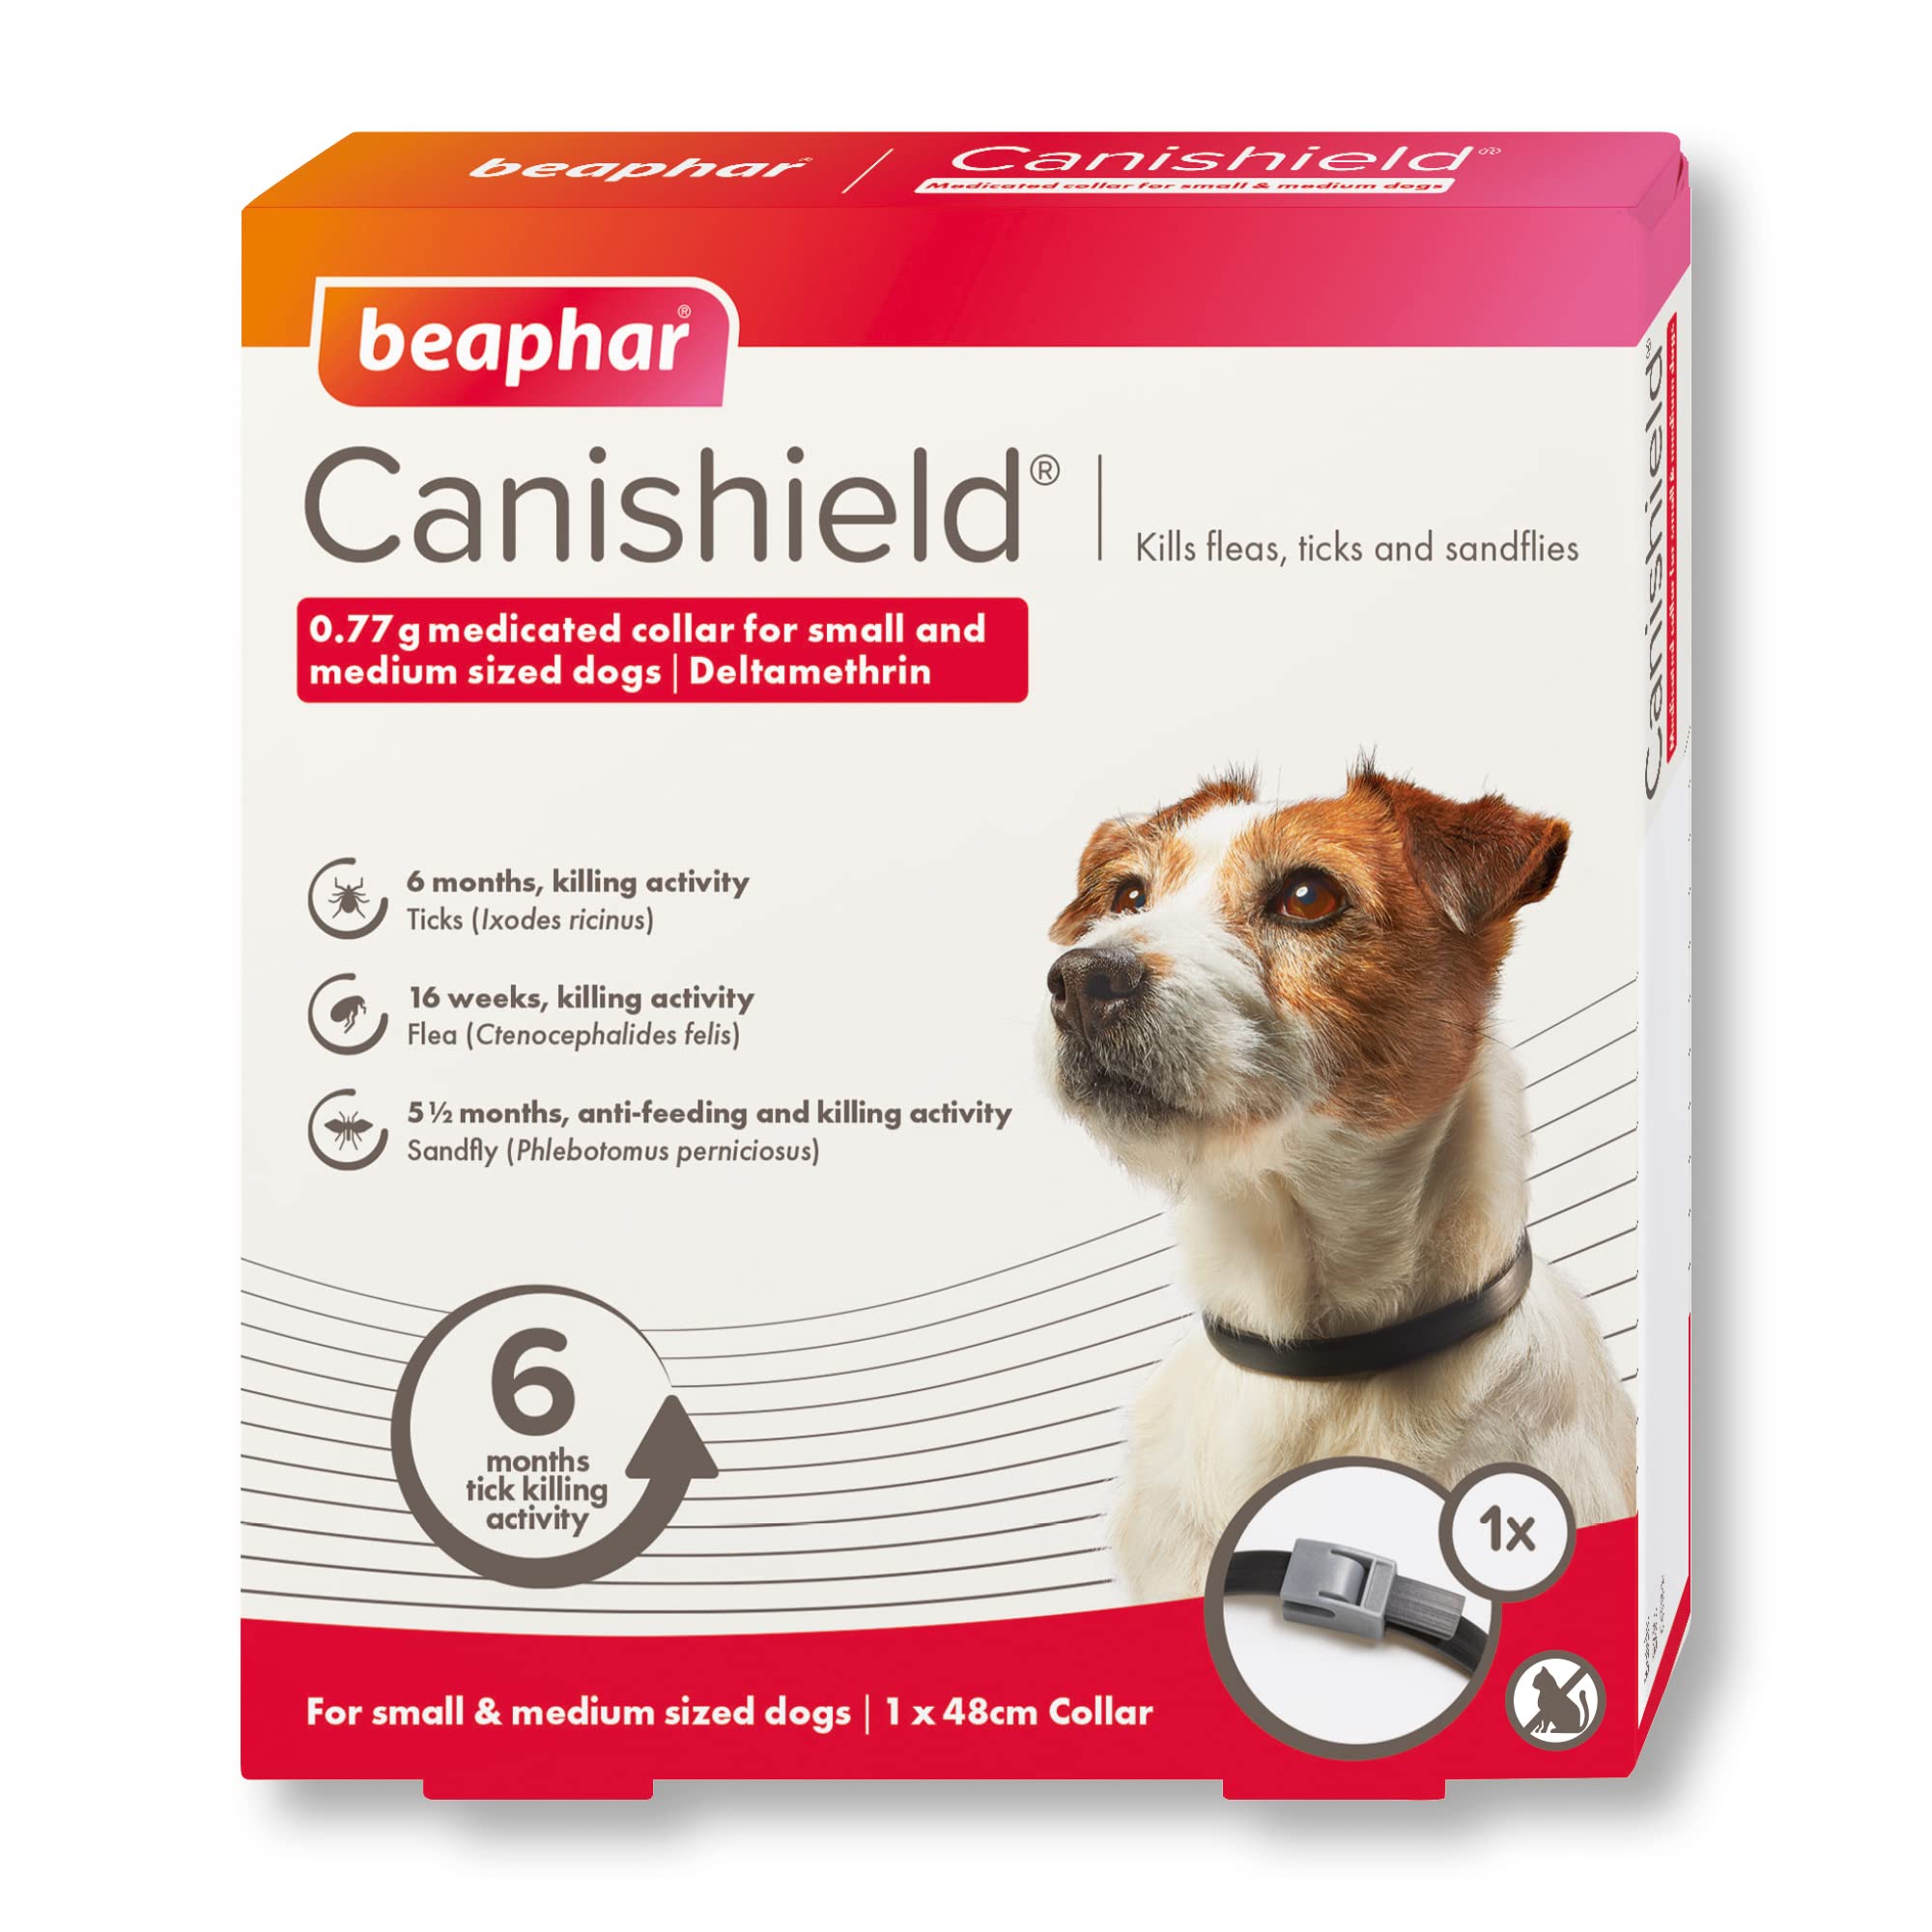 Beaphar Canishield Flohhalsband für medizinische Hunde, tötet Flöhe, Zecken und Sandfliegen, verstellbar für kleine/mittelgroße Hunde (bis 48 cm) | lang anhaltender Schutz | Tierarzt-Kraftbehandlung